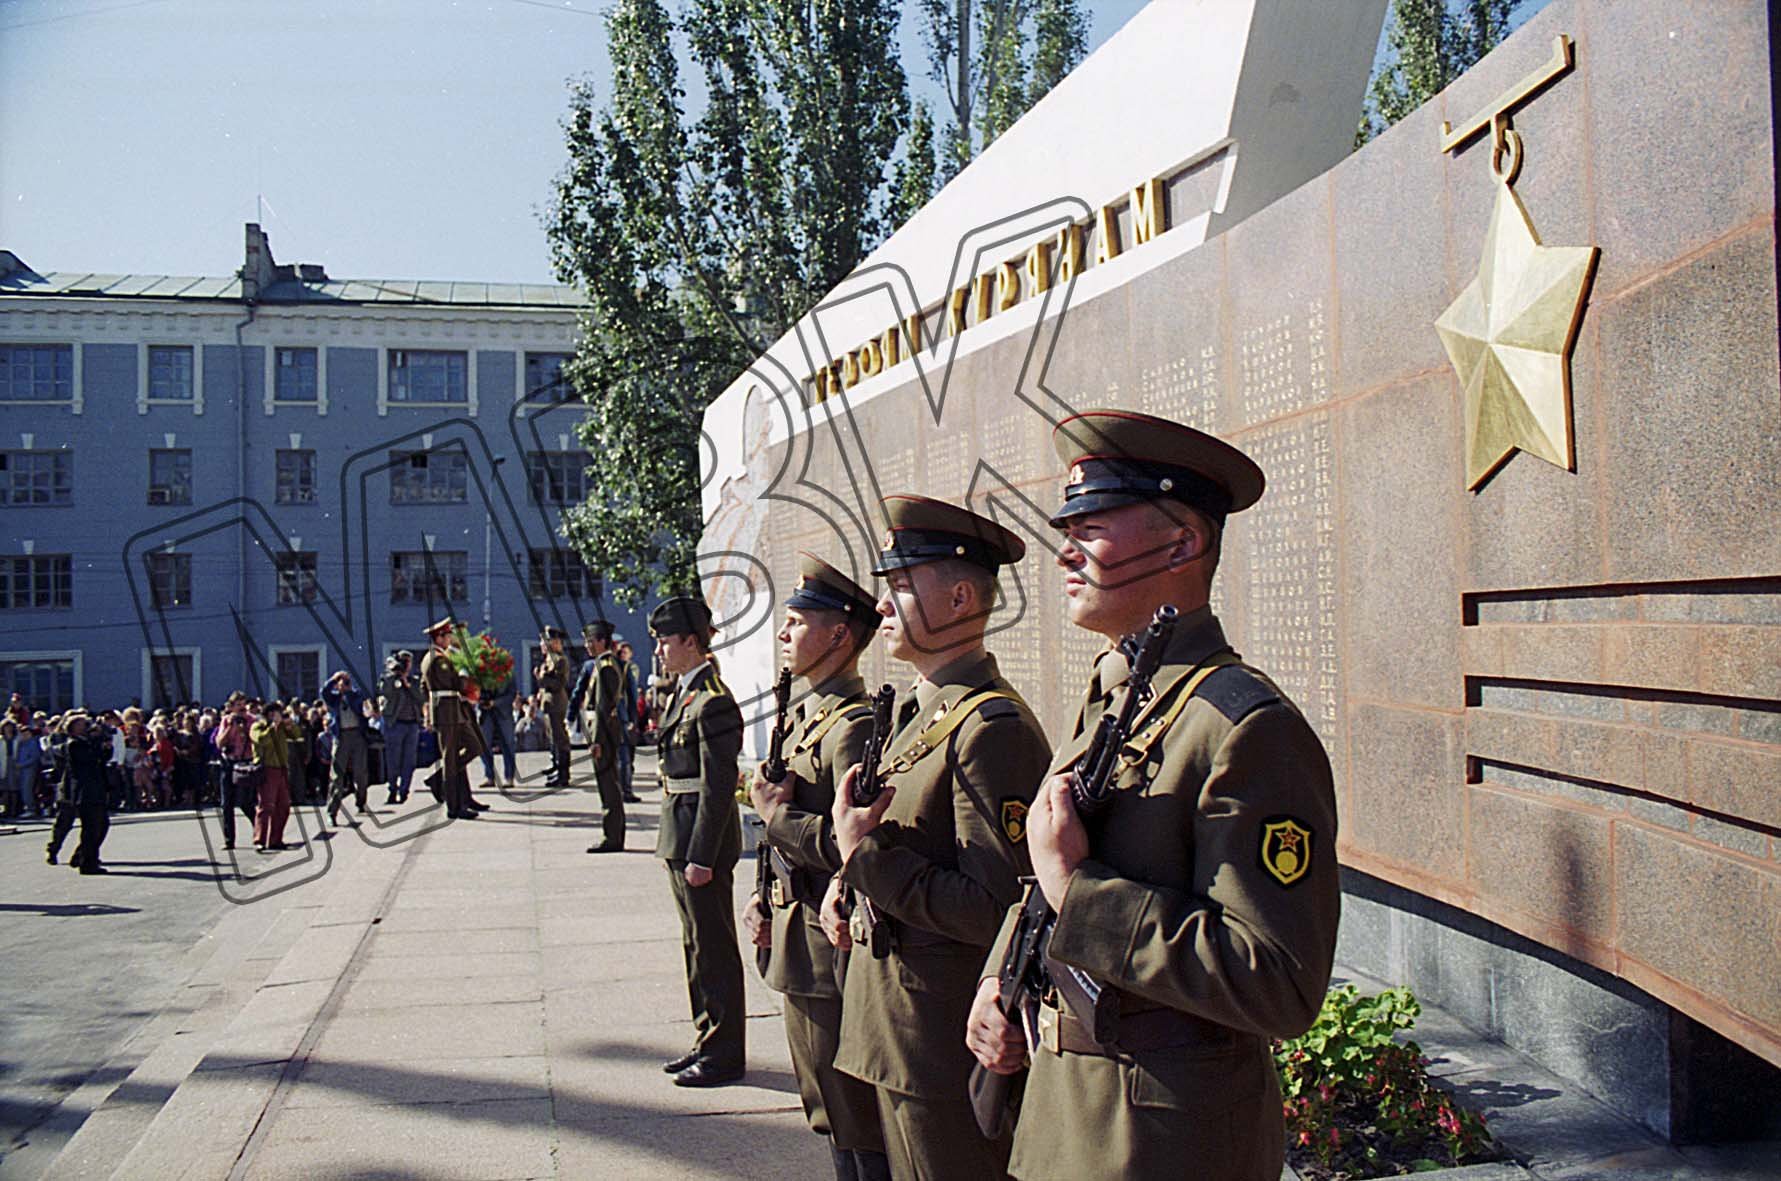 Fotografie: Begrüßung der Berlin-Brigade an ihrem Heimat-Standort, Kursk, 4./5. September 1994 (Museum Berlin-Karlshorst RR-P)